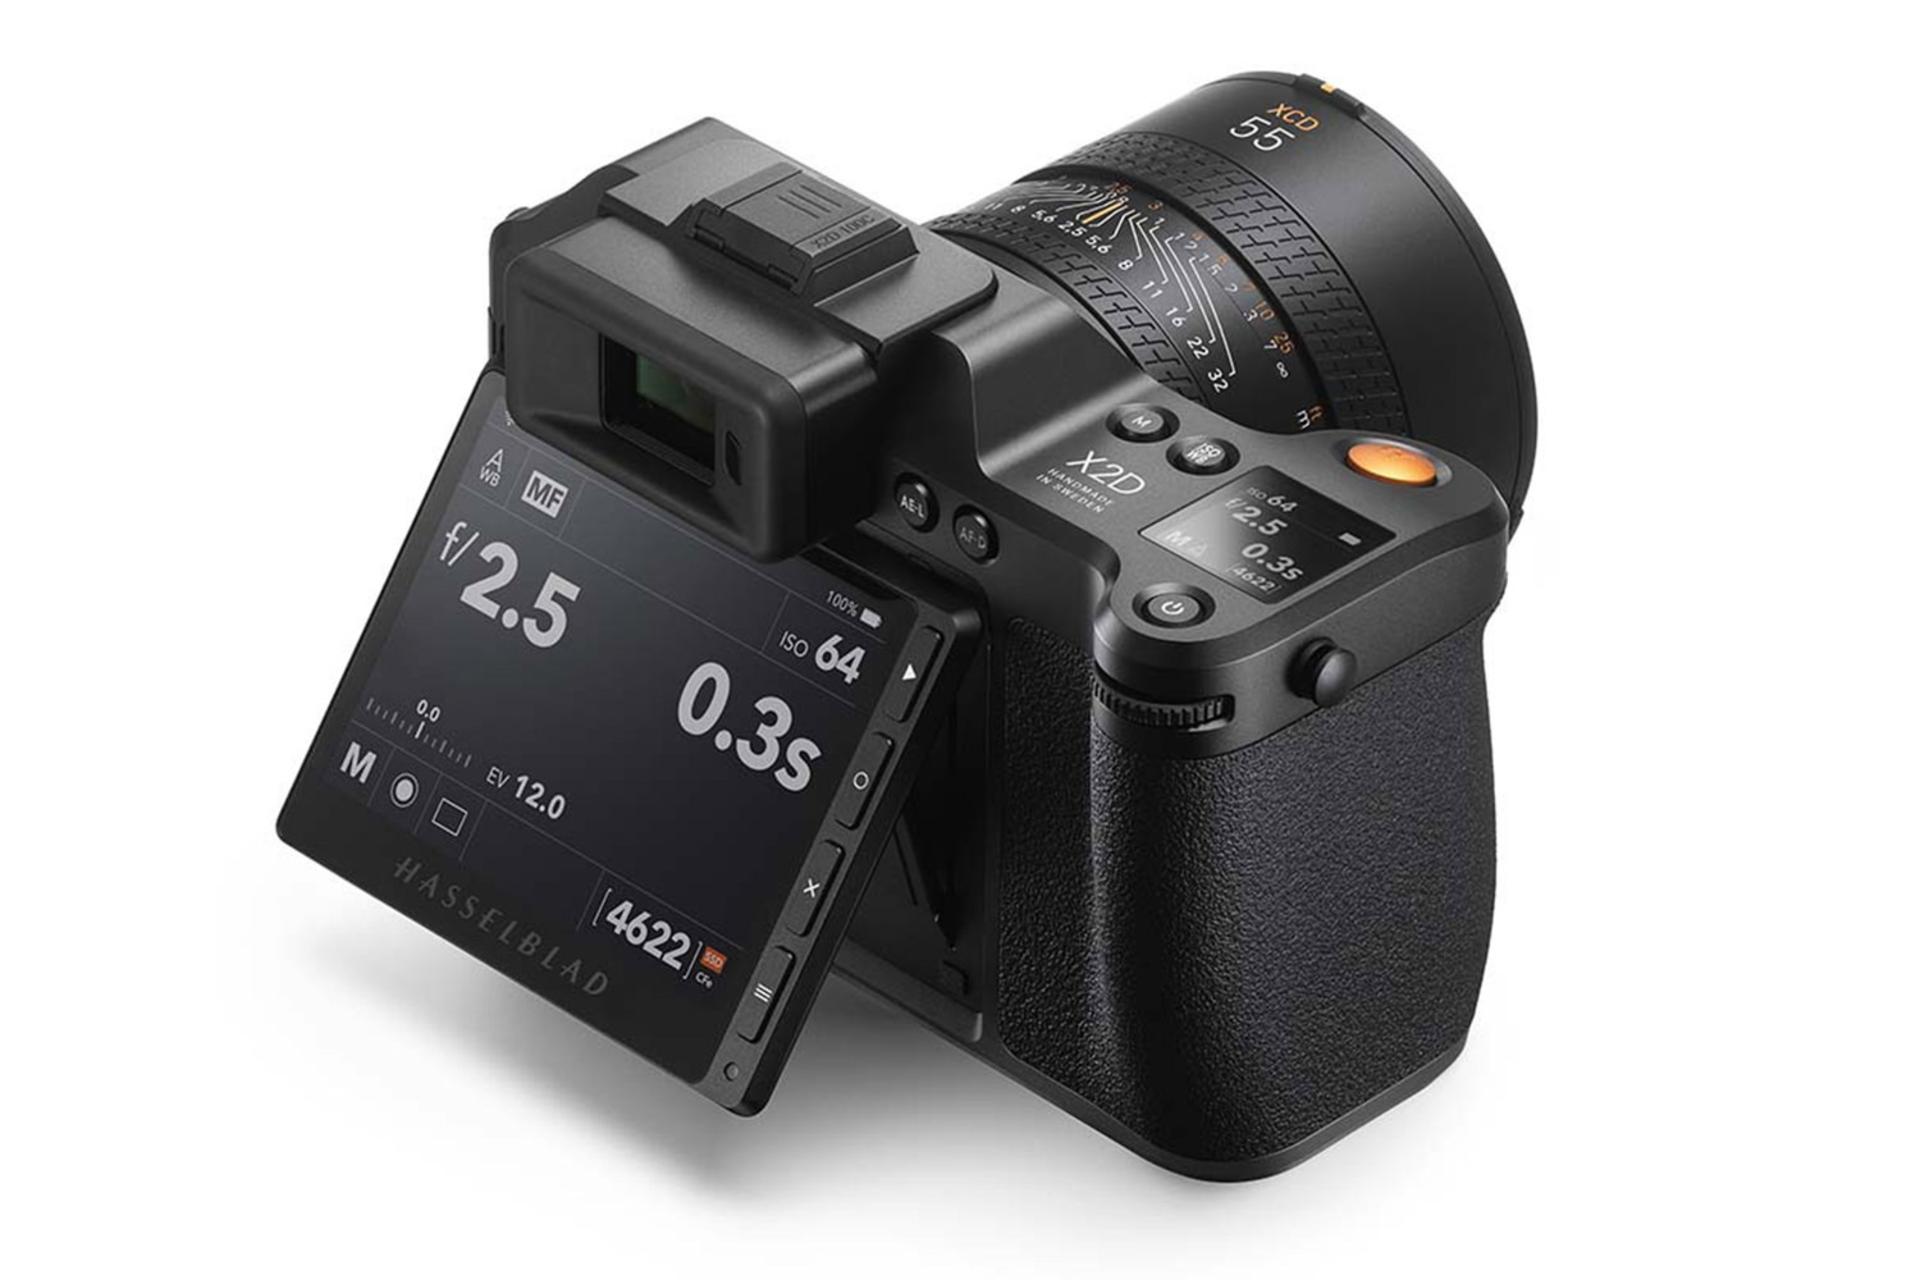 نمایشگر LCD دوربین هسل بلاد Hasselblad X2D 100c